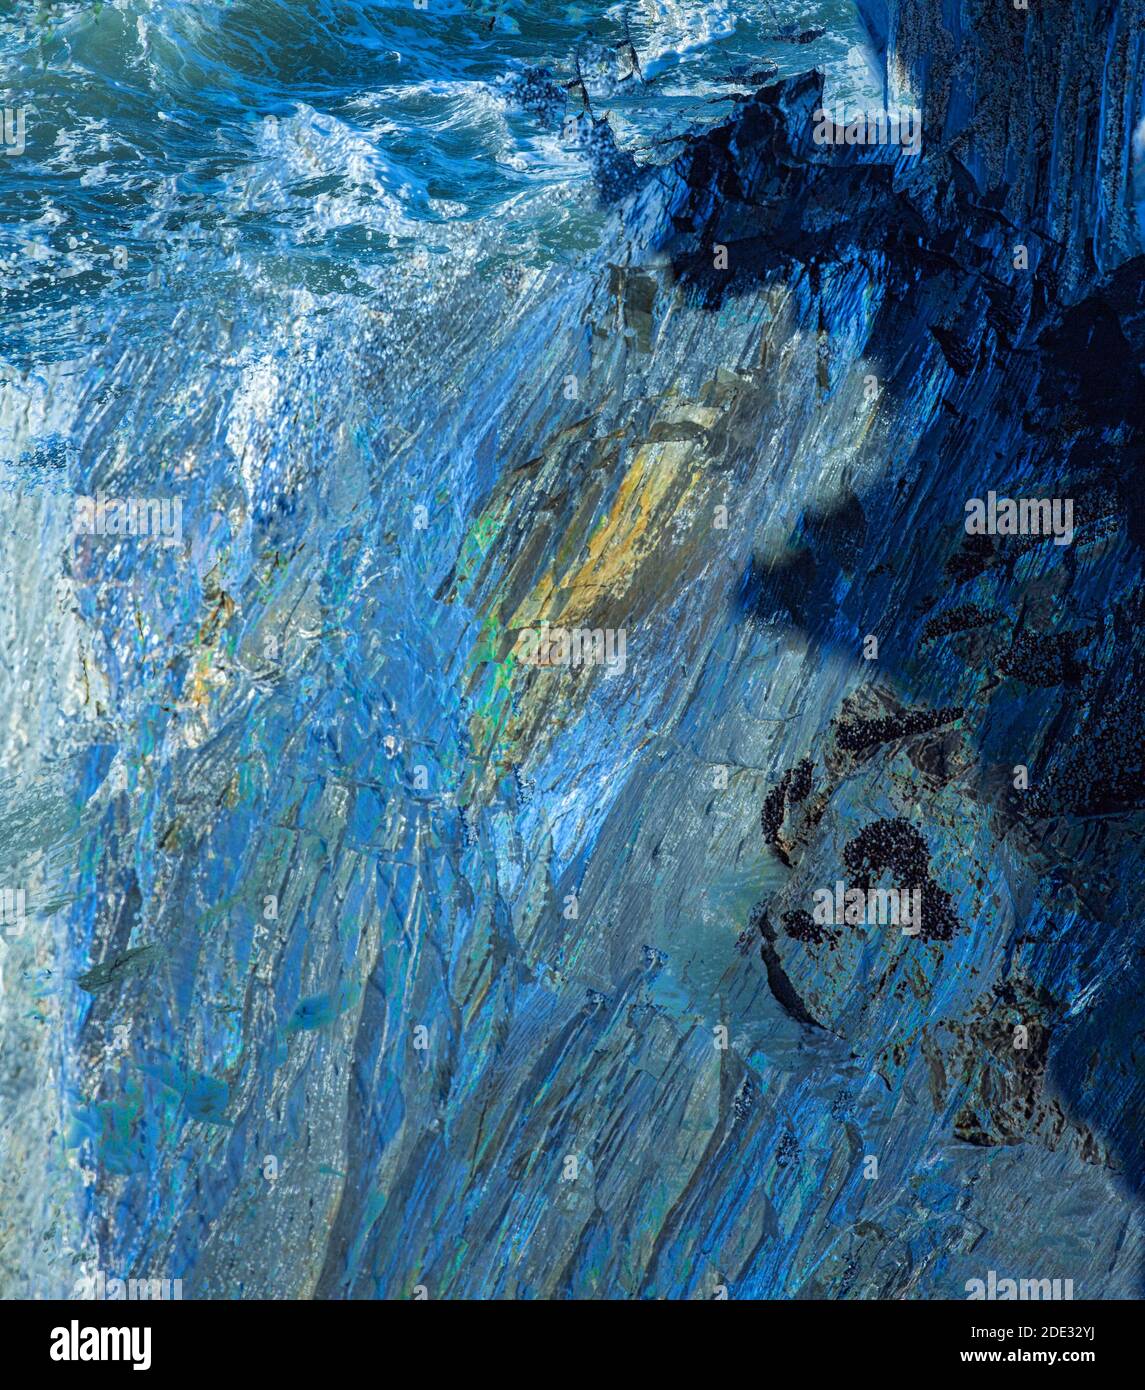 Abstraktes Bild des Meeres und der Felsen, die mit mehreren aufgenommen wurden Belichtung und Kamerabewegung Stockfoto